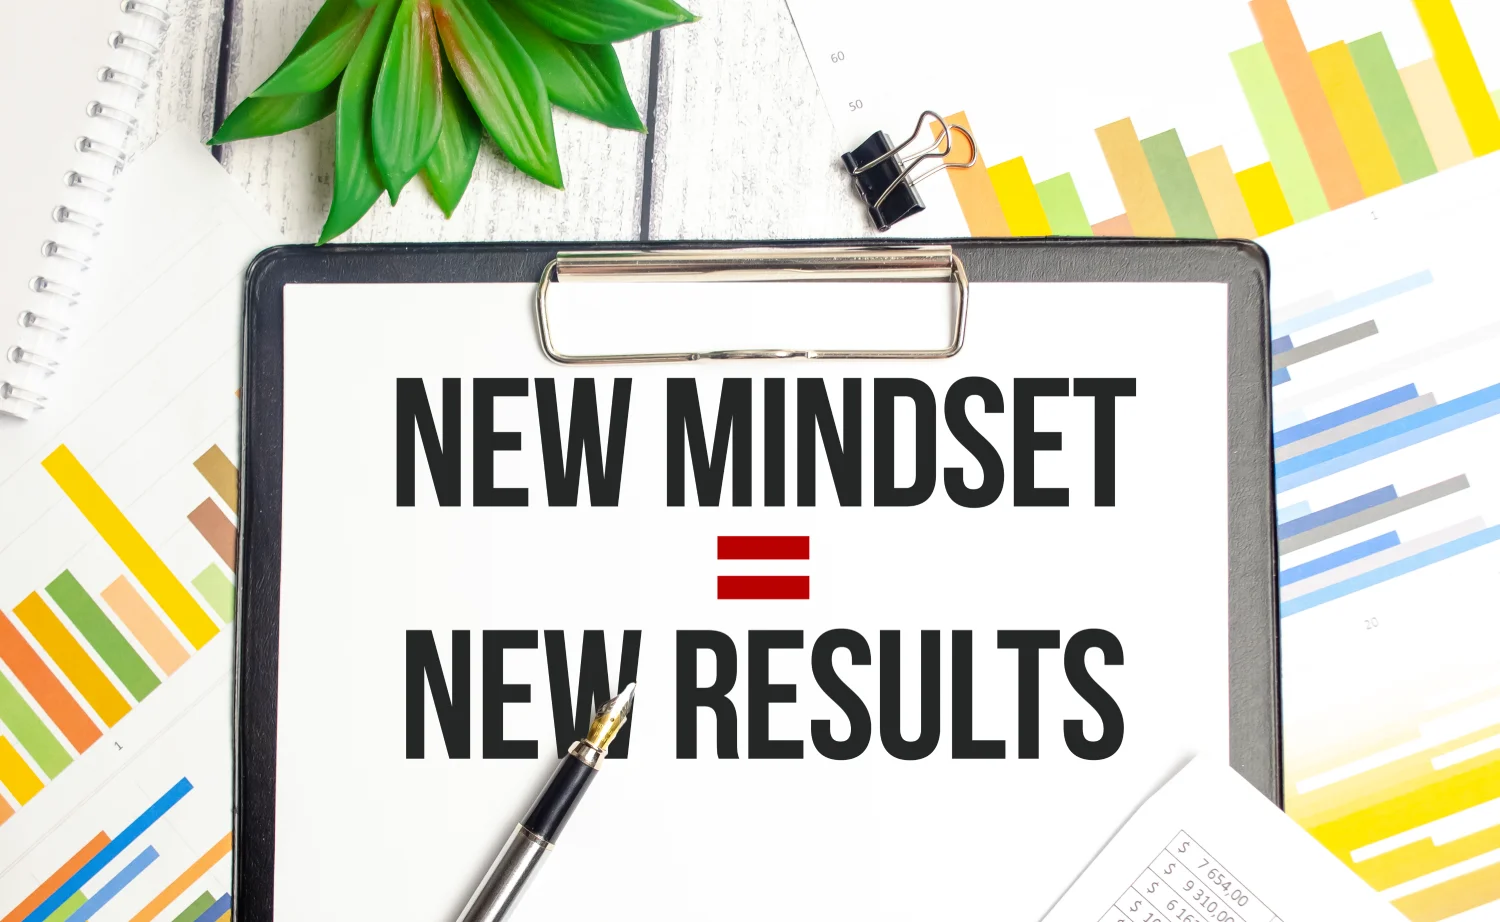 Abundance Mindset Exercises - get a new ;mindset for new results.